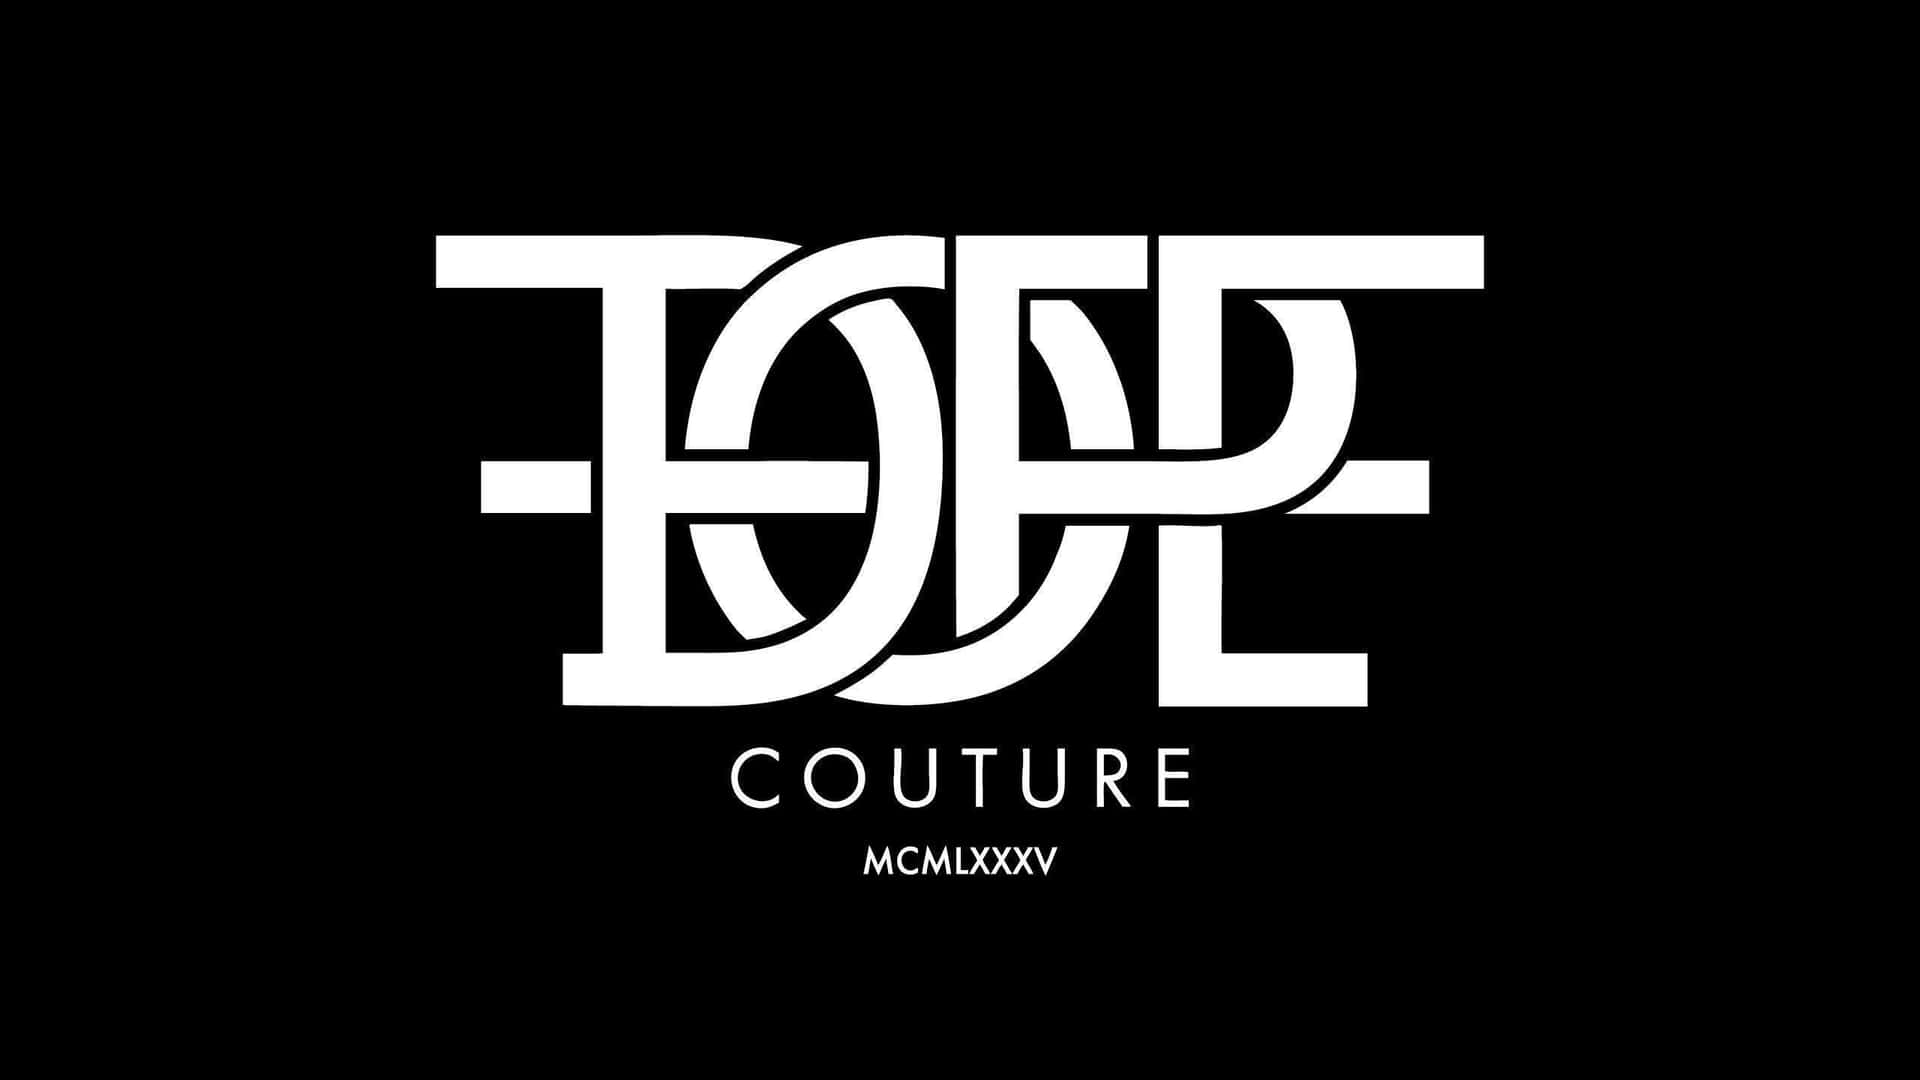 Et sort og hvidt logo for tøjmærket couture. Wallpaper